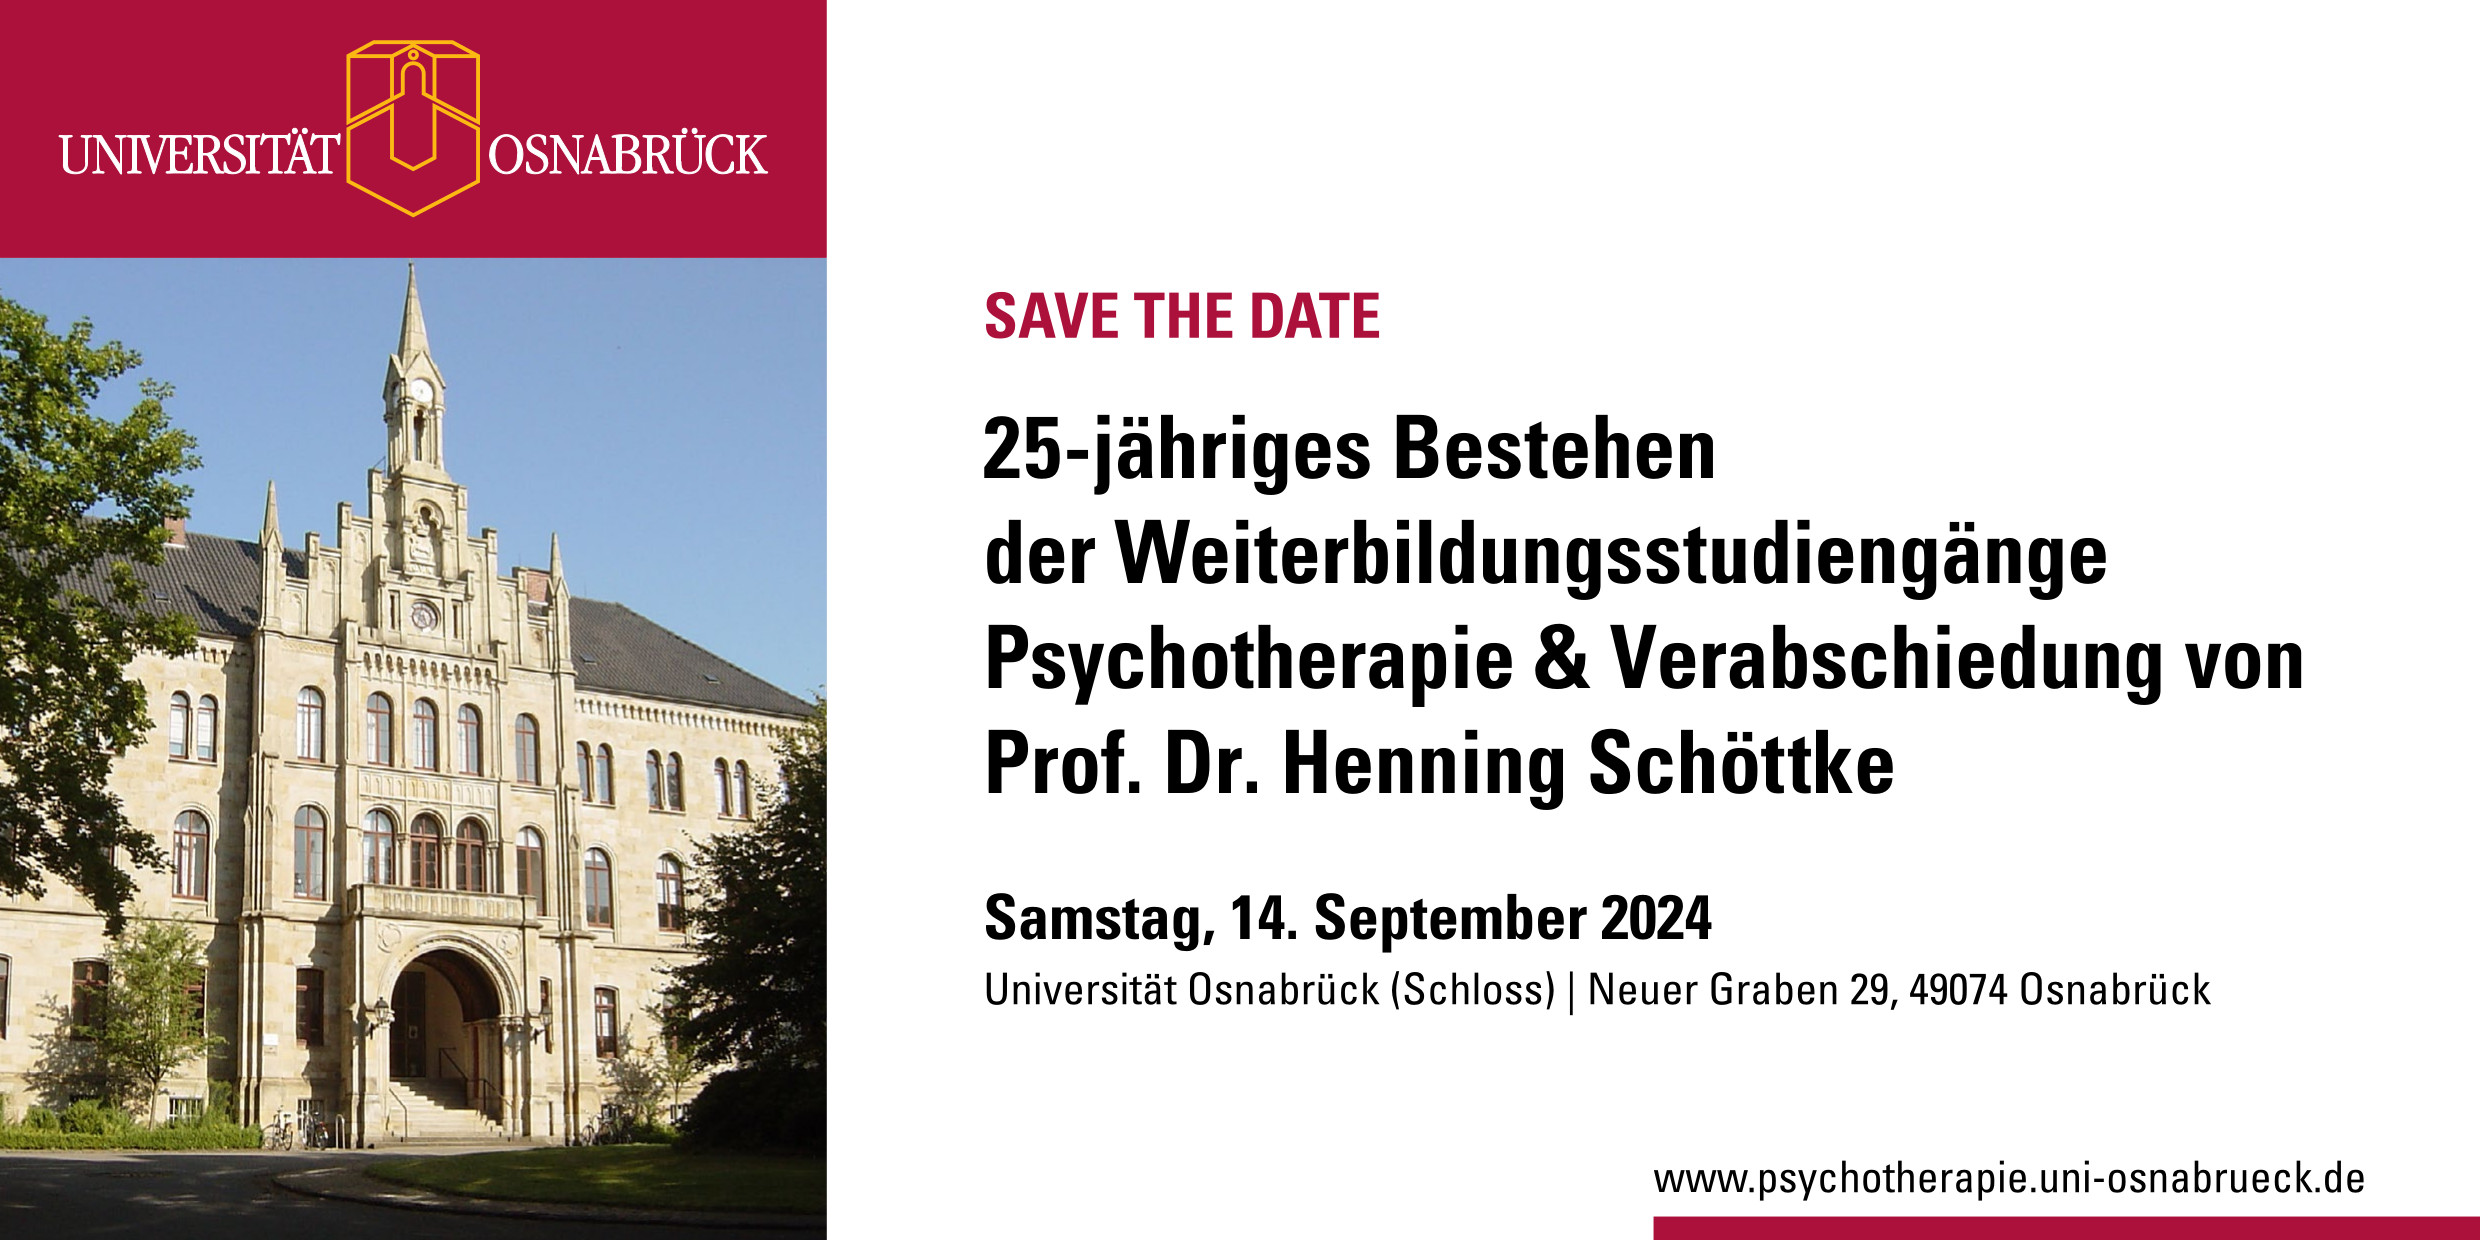 25-jähriges Bestehen
der Weiterbildungsstudiengänge
Psychotherapie & Verabschiedung von
Prof. Dr. Henning Schöttke